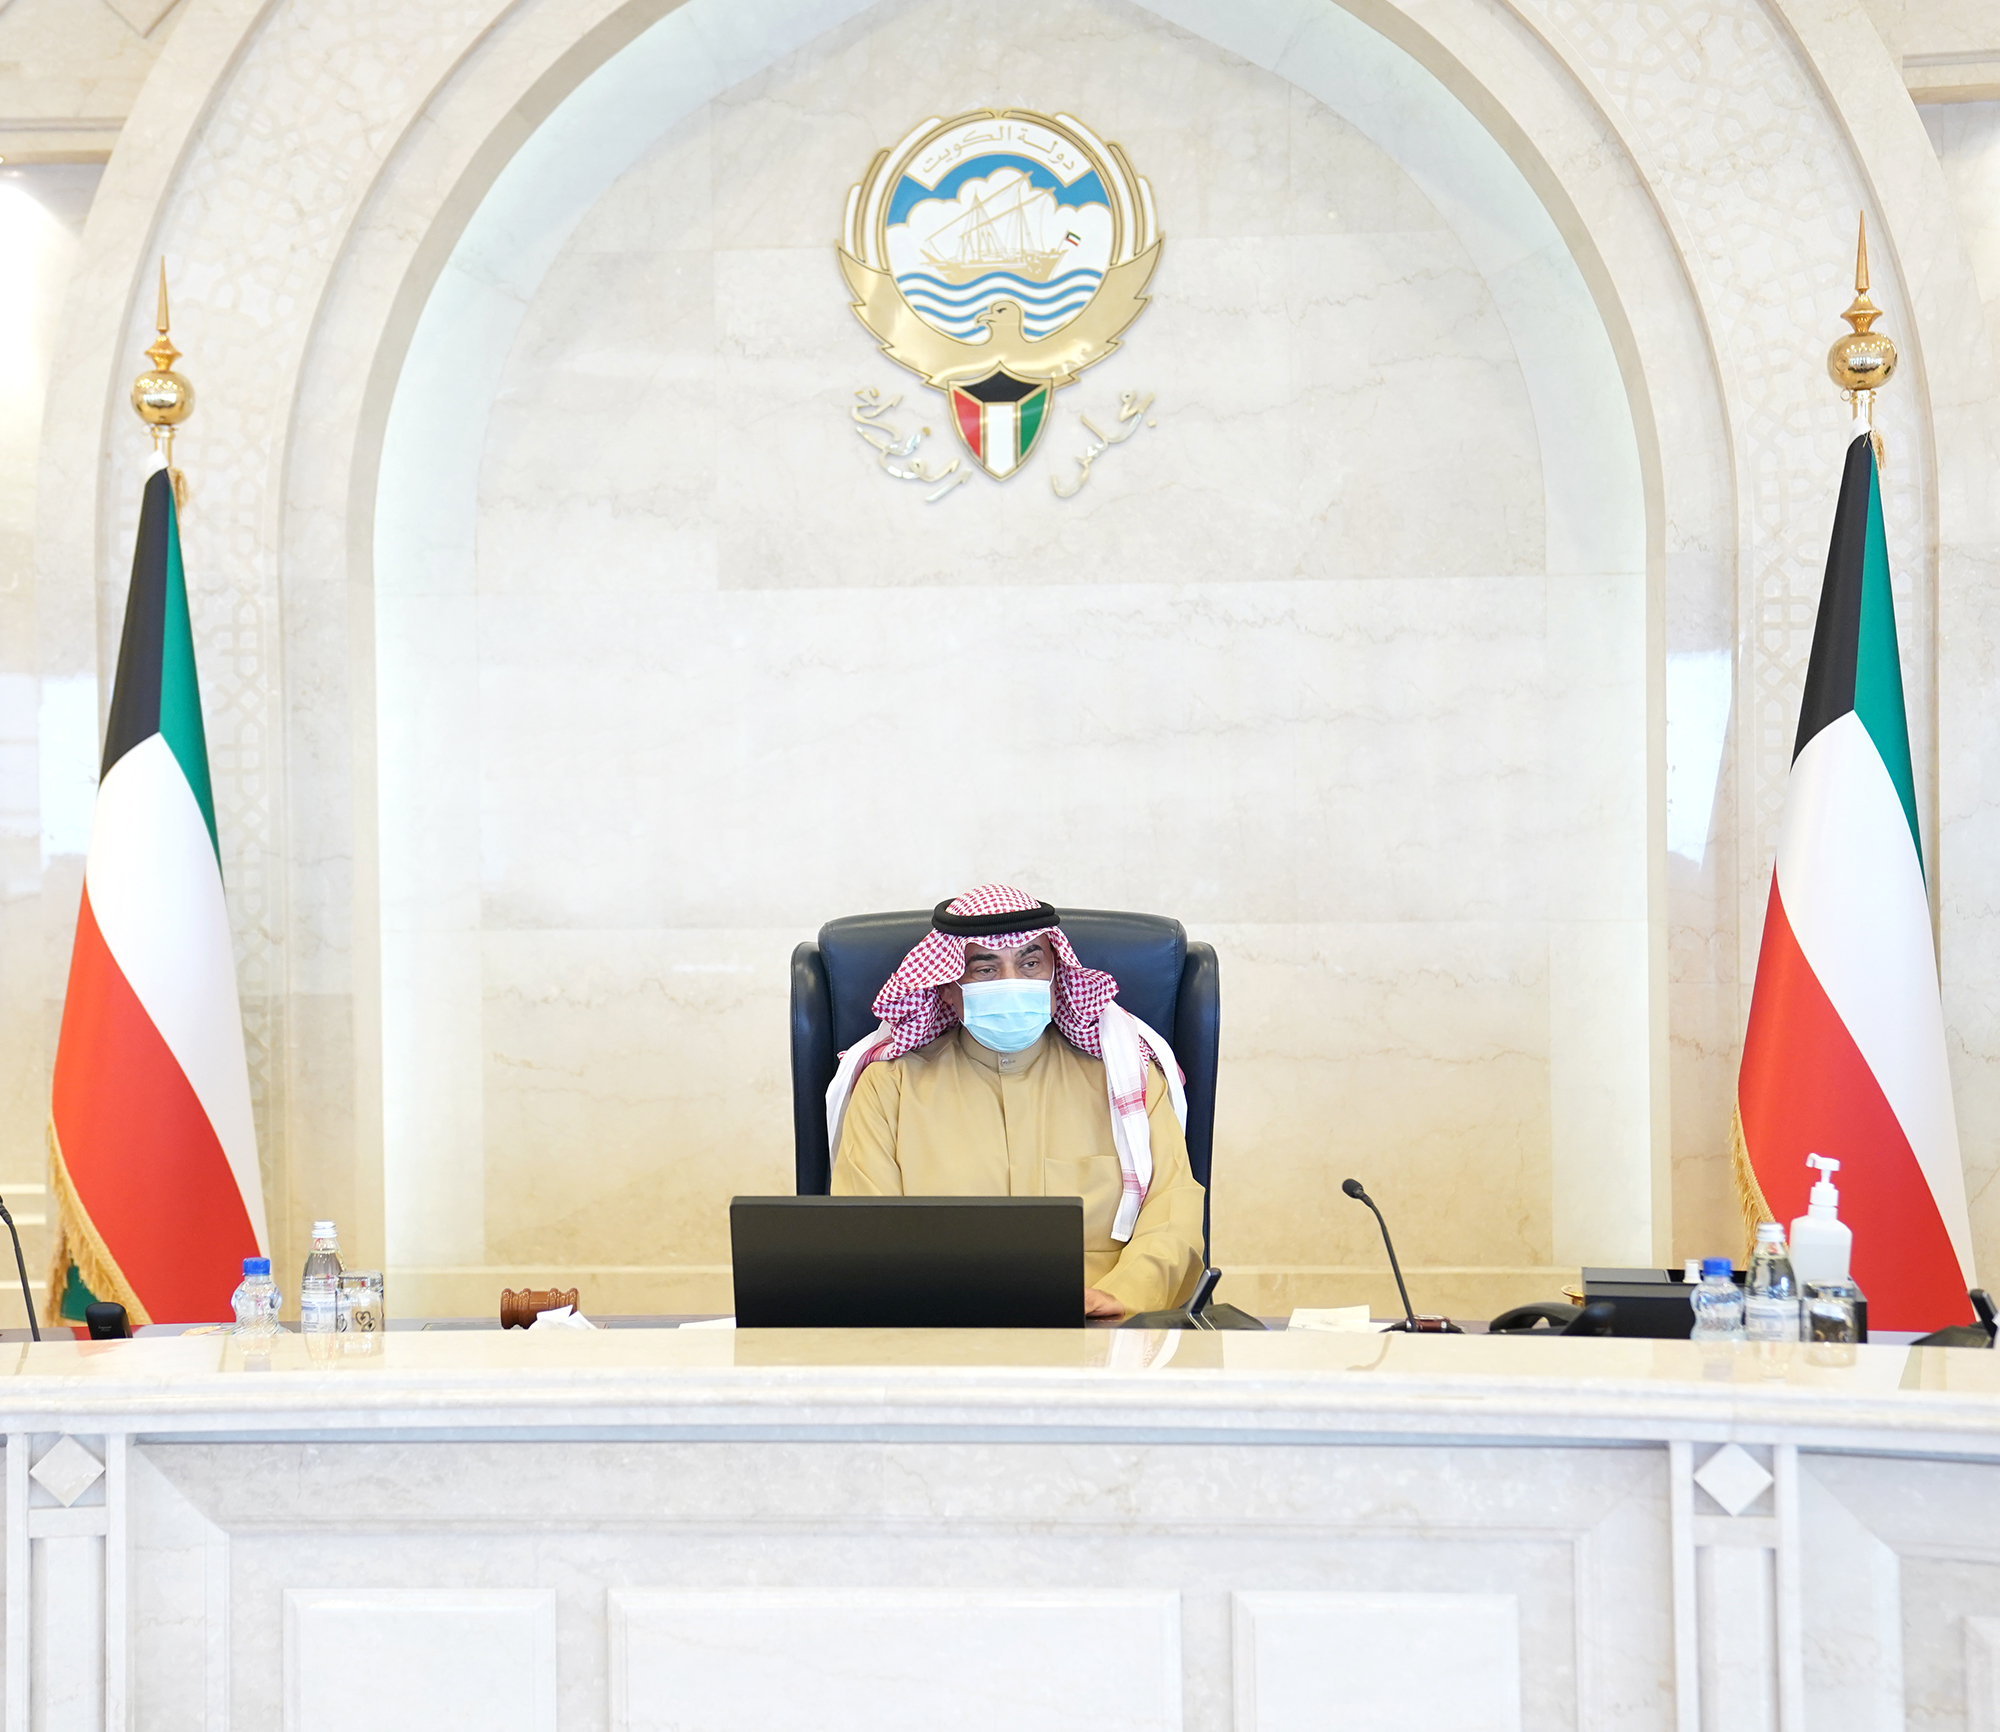 سمو الشيخ صباح خالد الحمد الصباح رئيس مجلس الوزراء يترأس جلسة المجلس